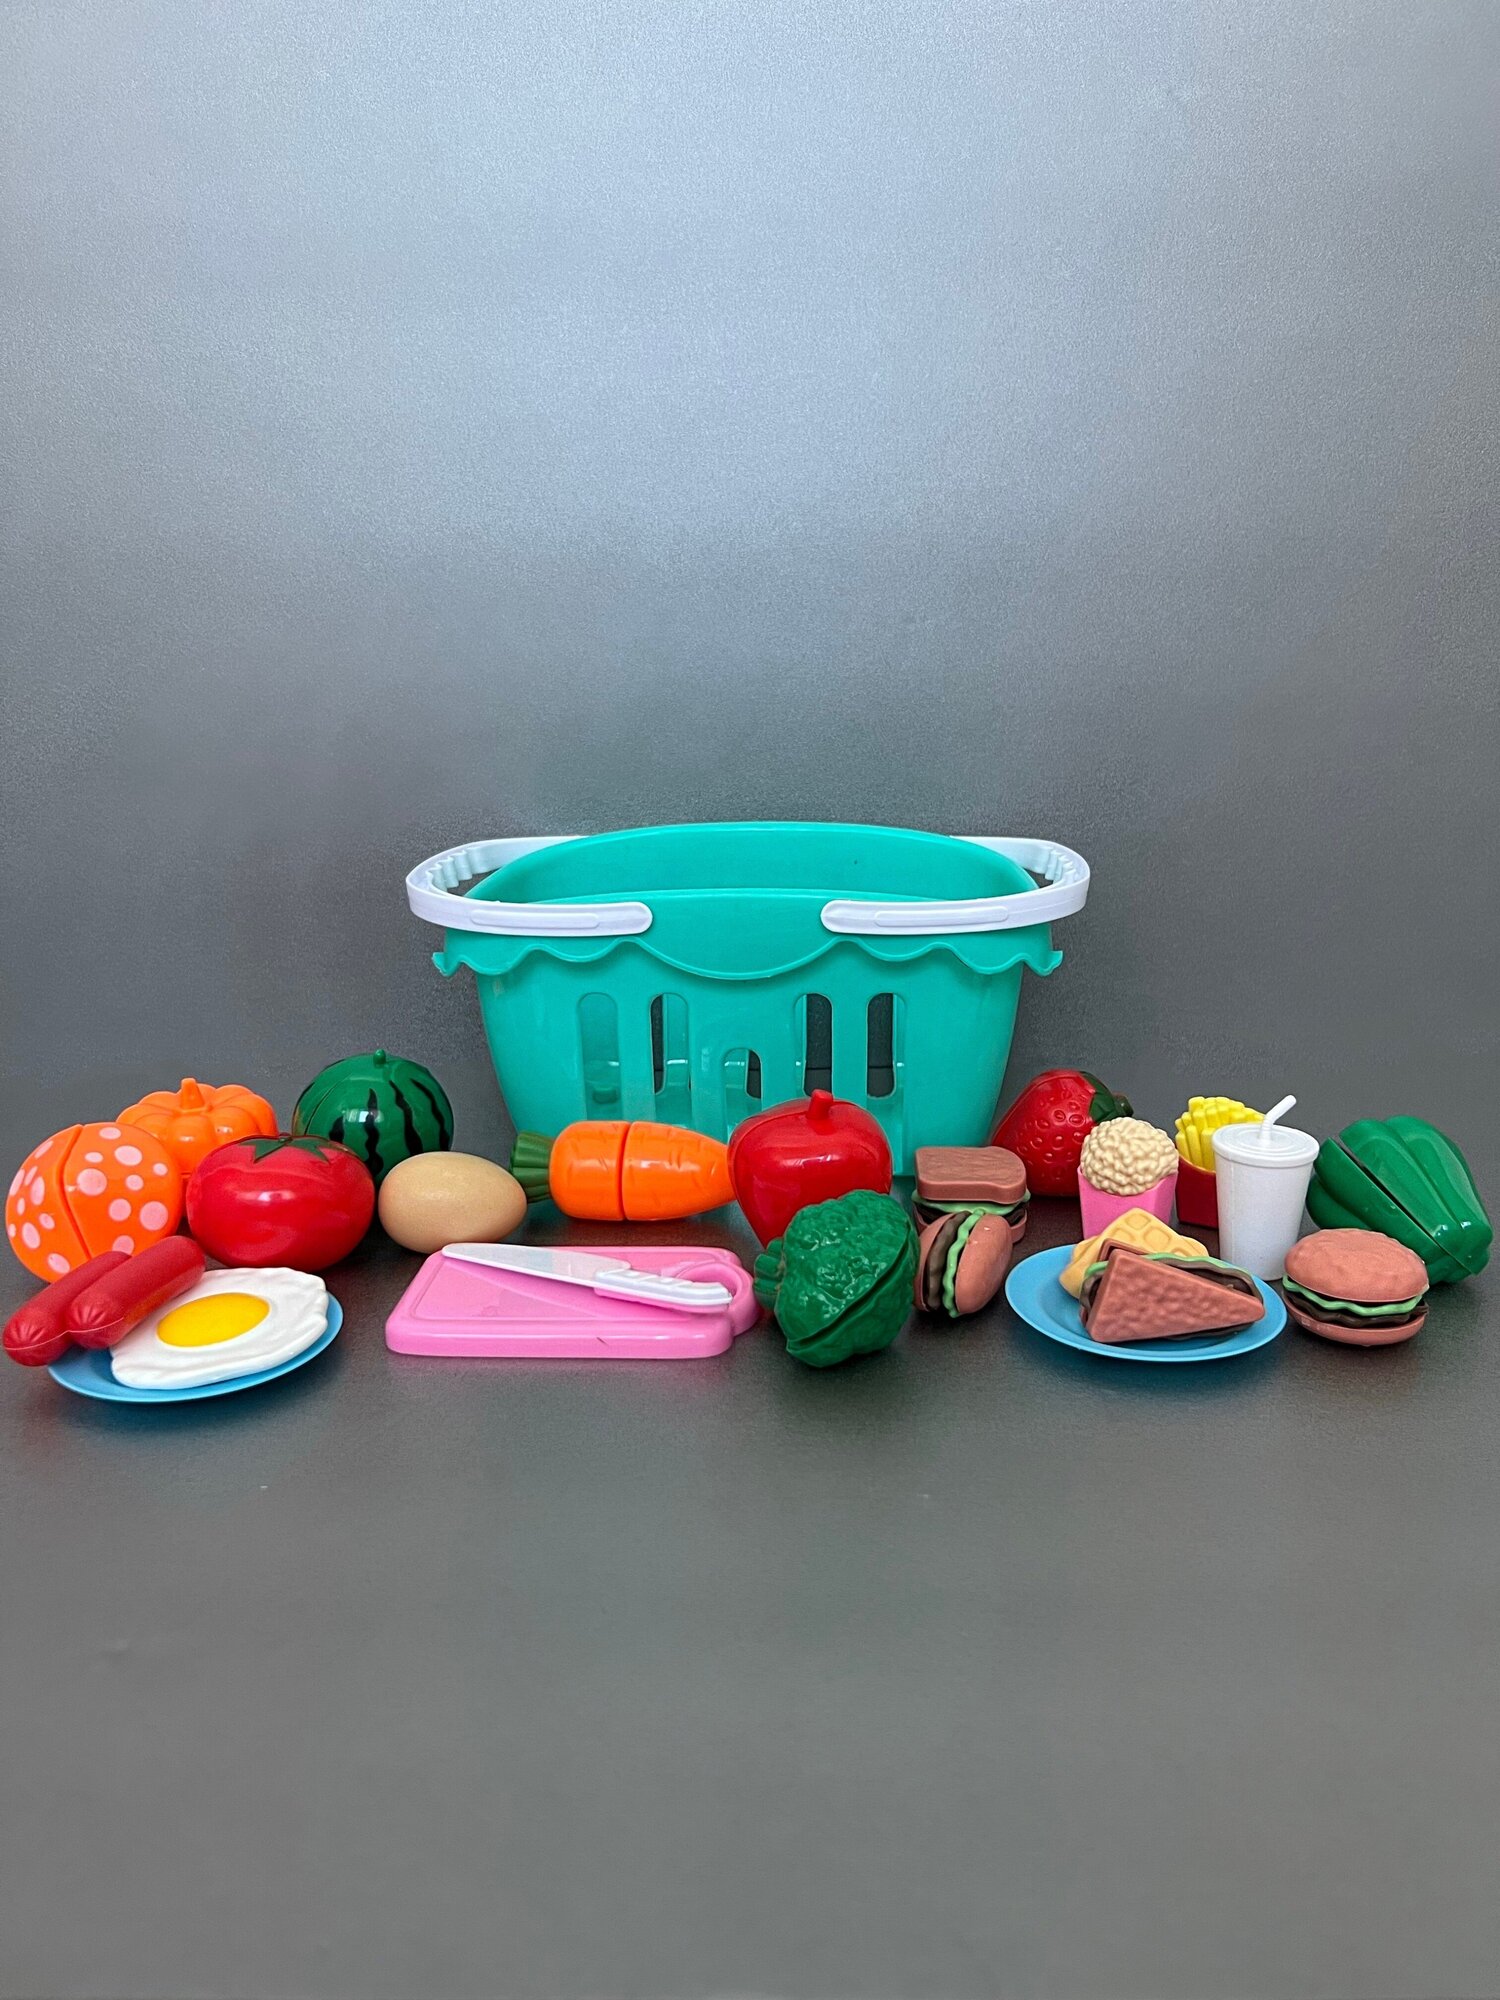 Набор овощей, фруктов, посуды (игрушечный магазин)